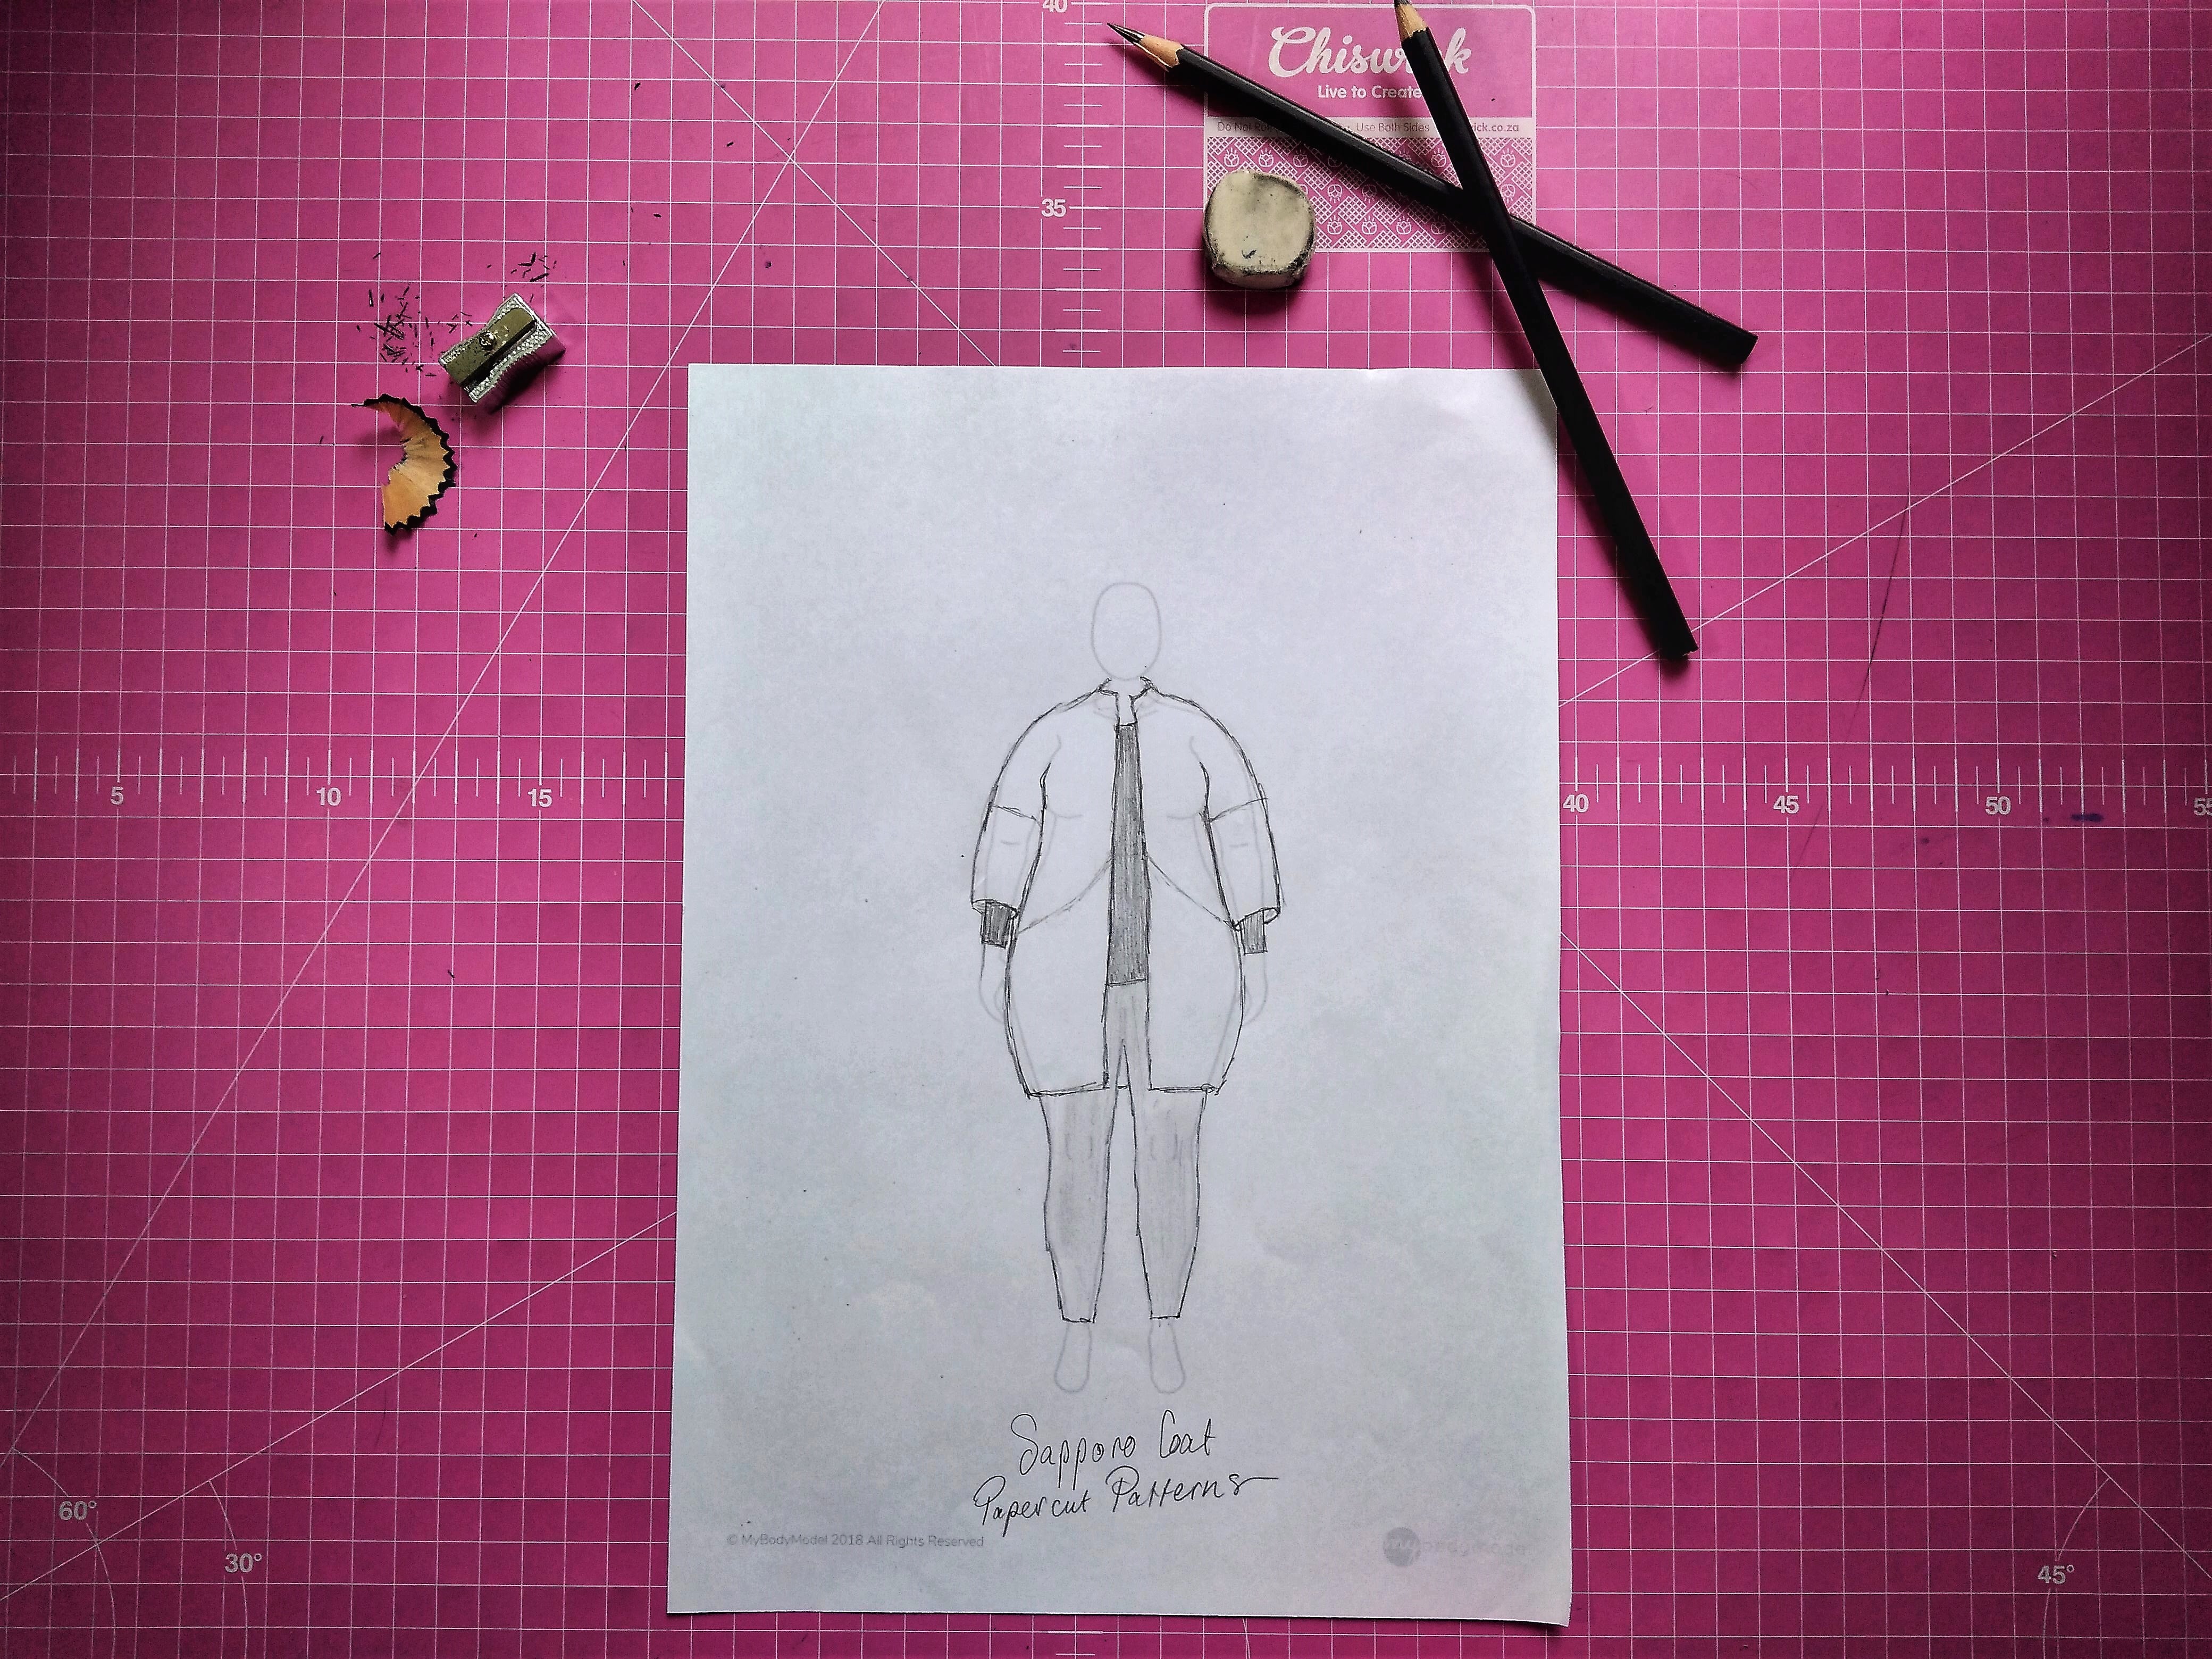 MyBodyModel Sketch of Sapporo Coat Named Patterns by Thandi